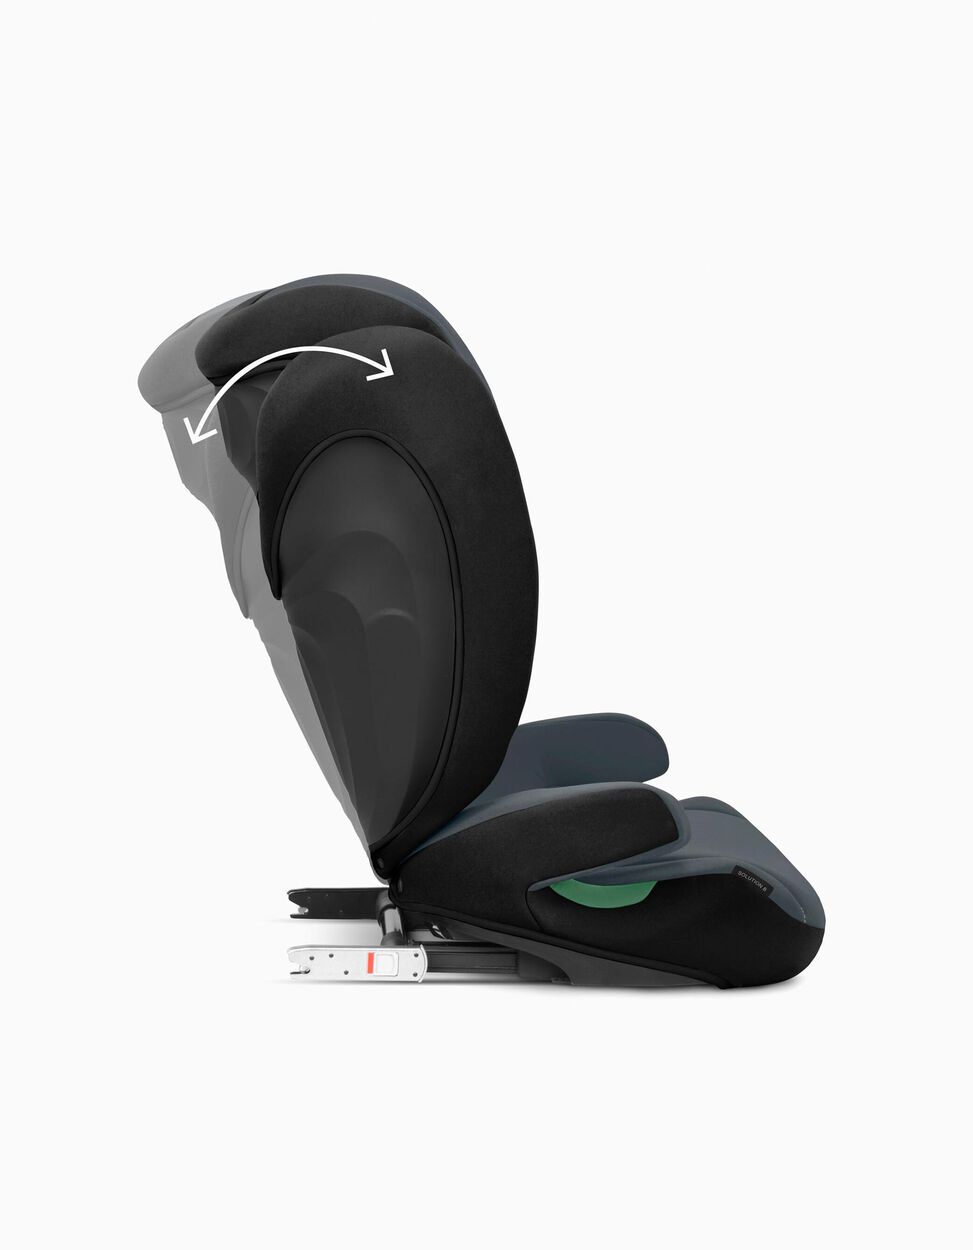 Cadeira Auto I-Size Solution B I-Fix Steel Grey Cybex